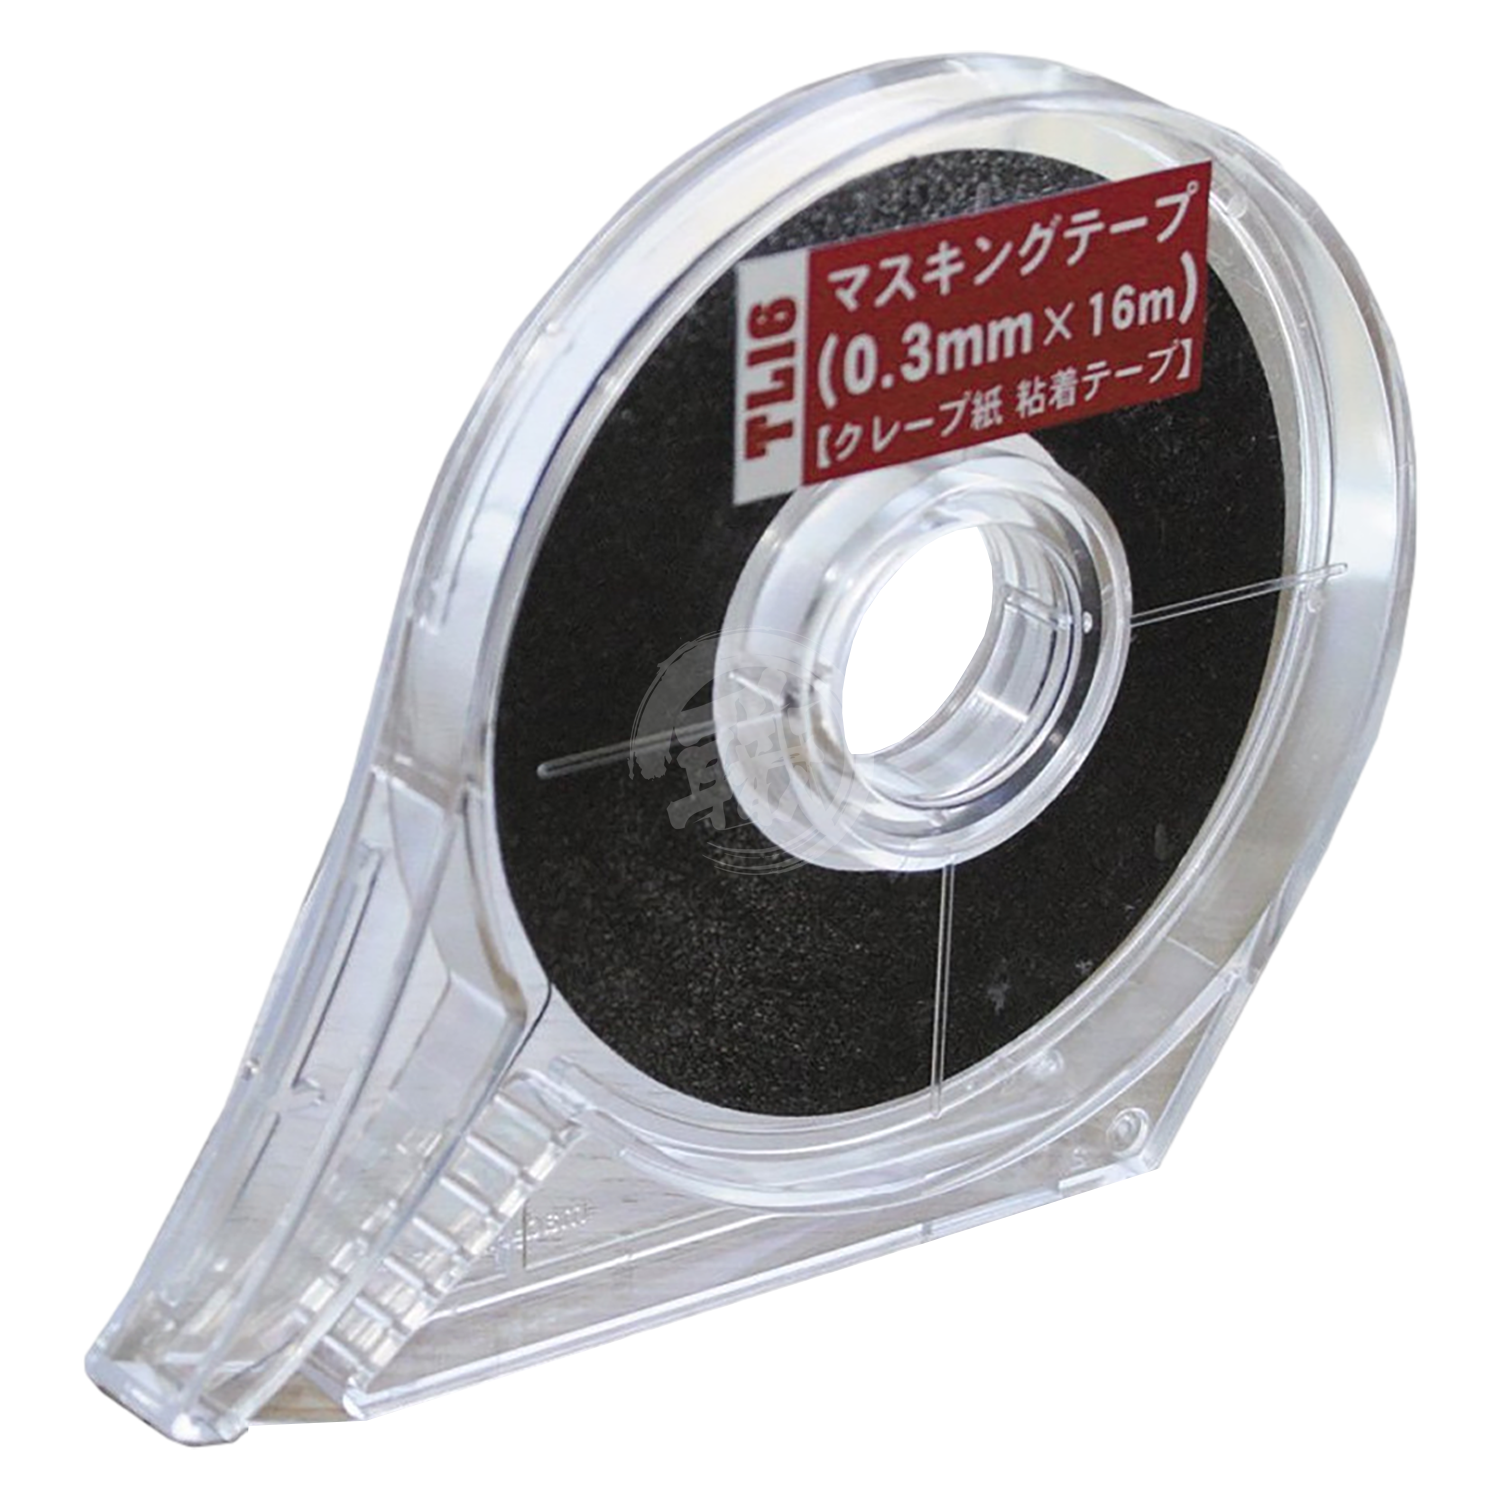 Masking Tape [0.3mm] - ShokuninGunpla